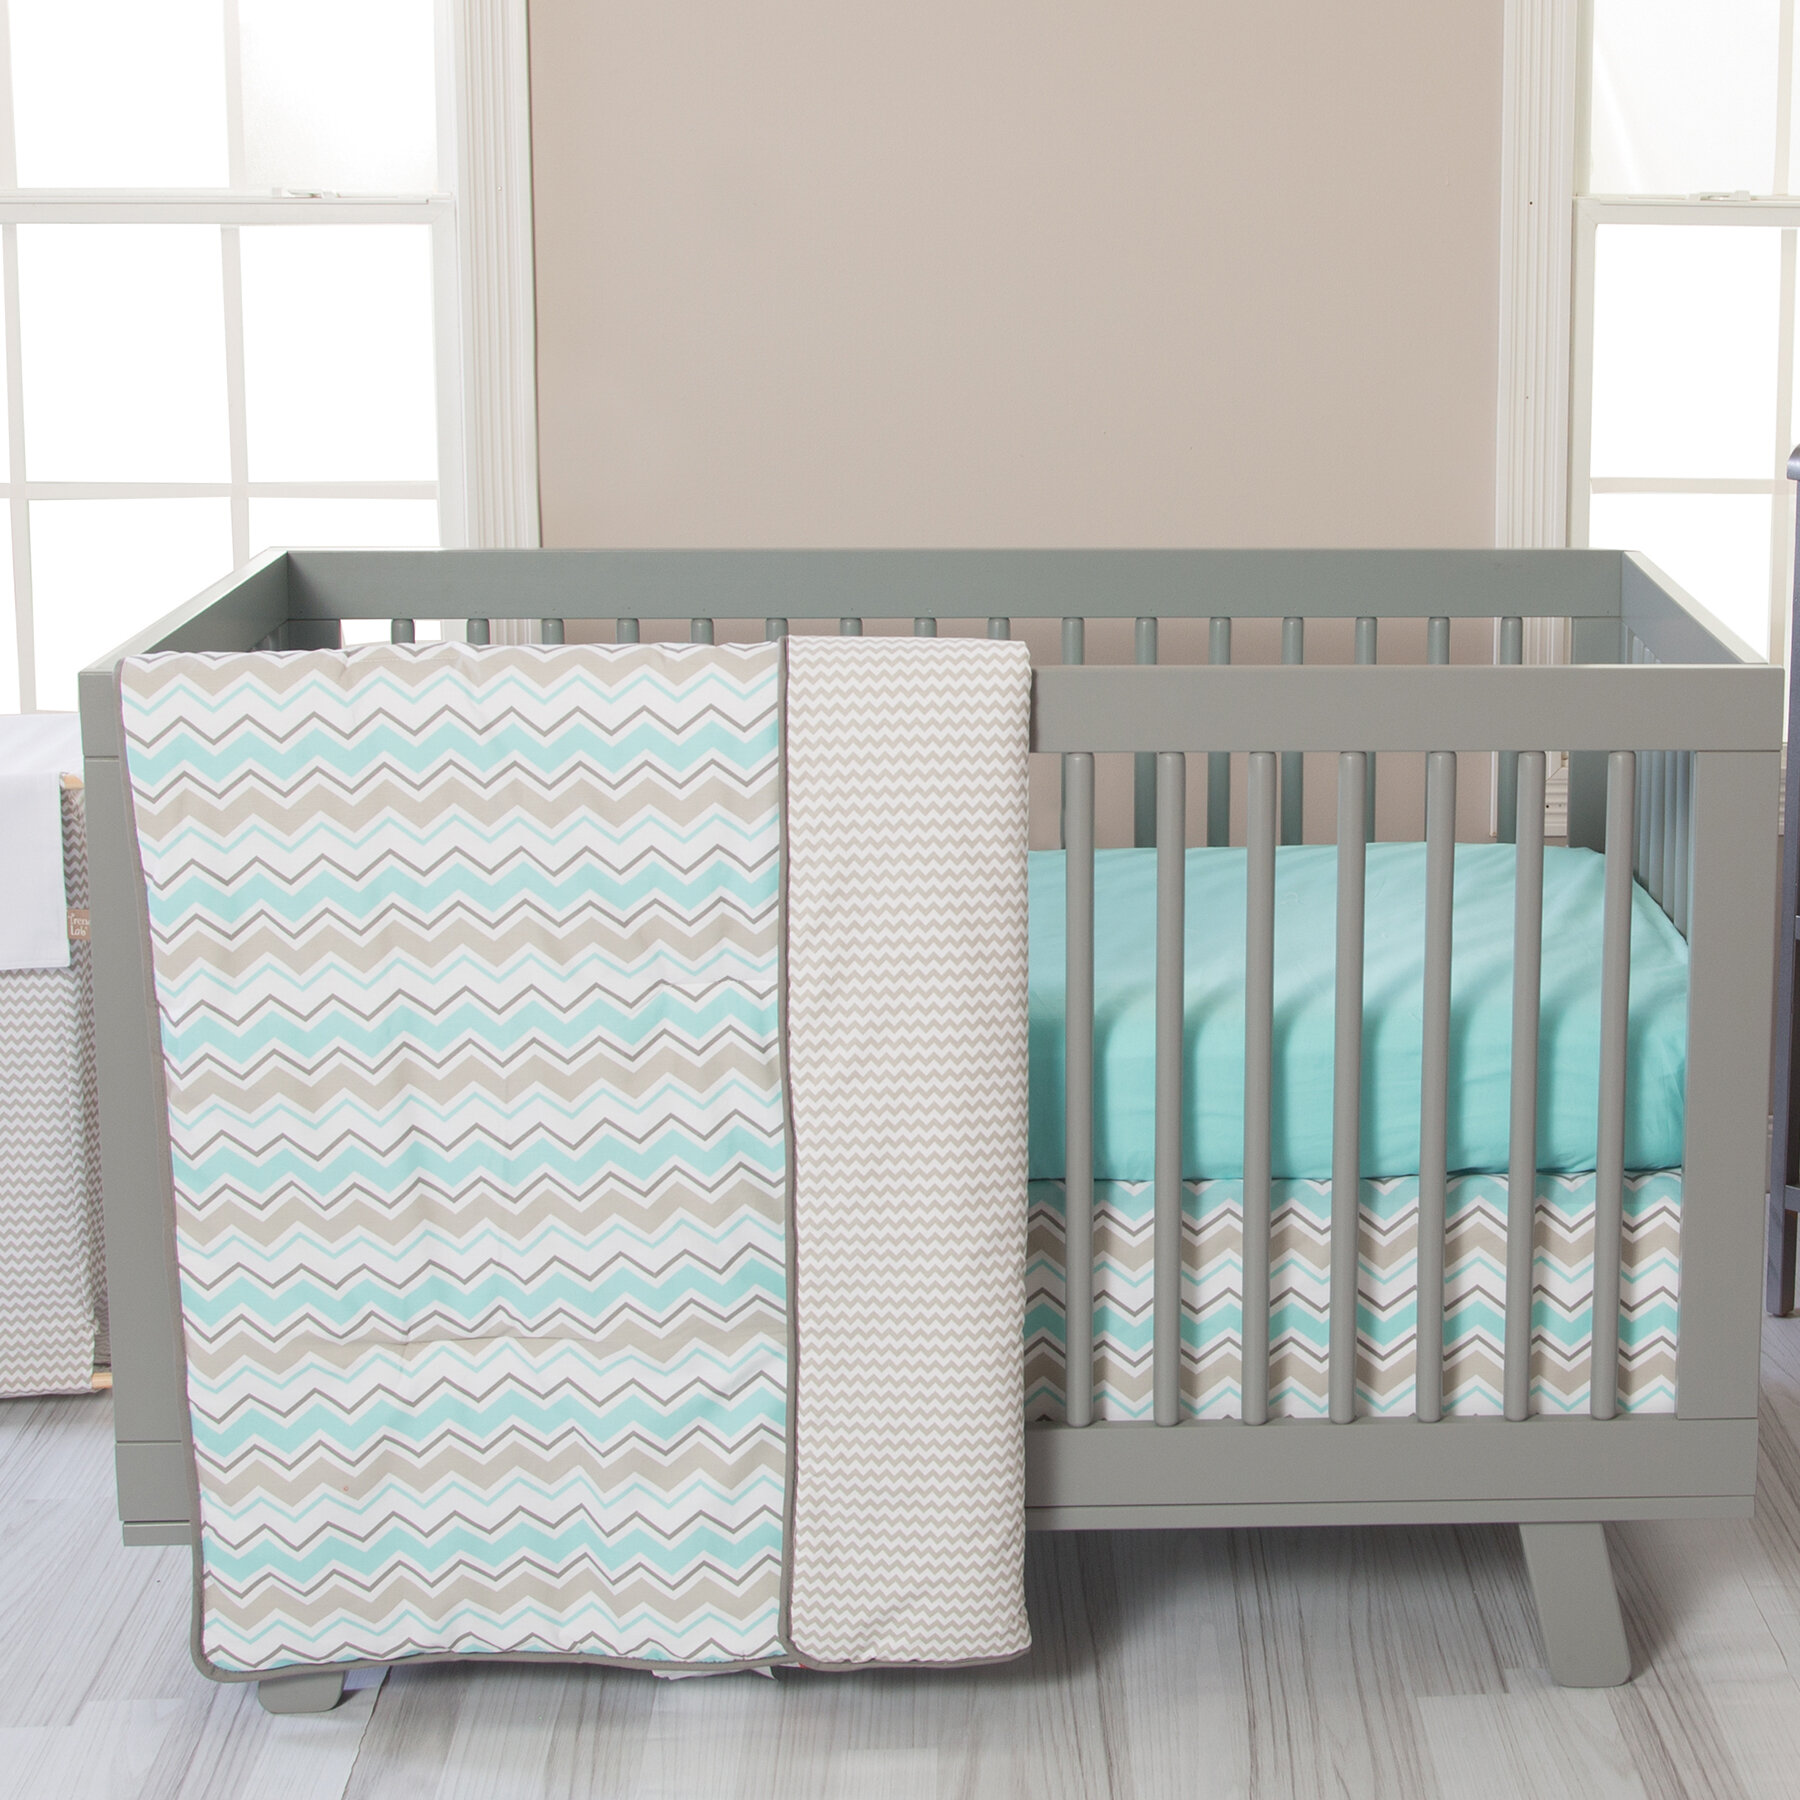 cradle bed set